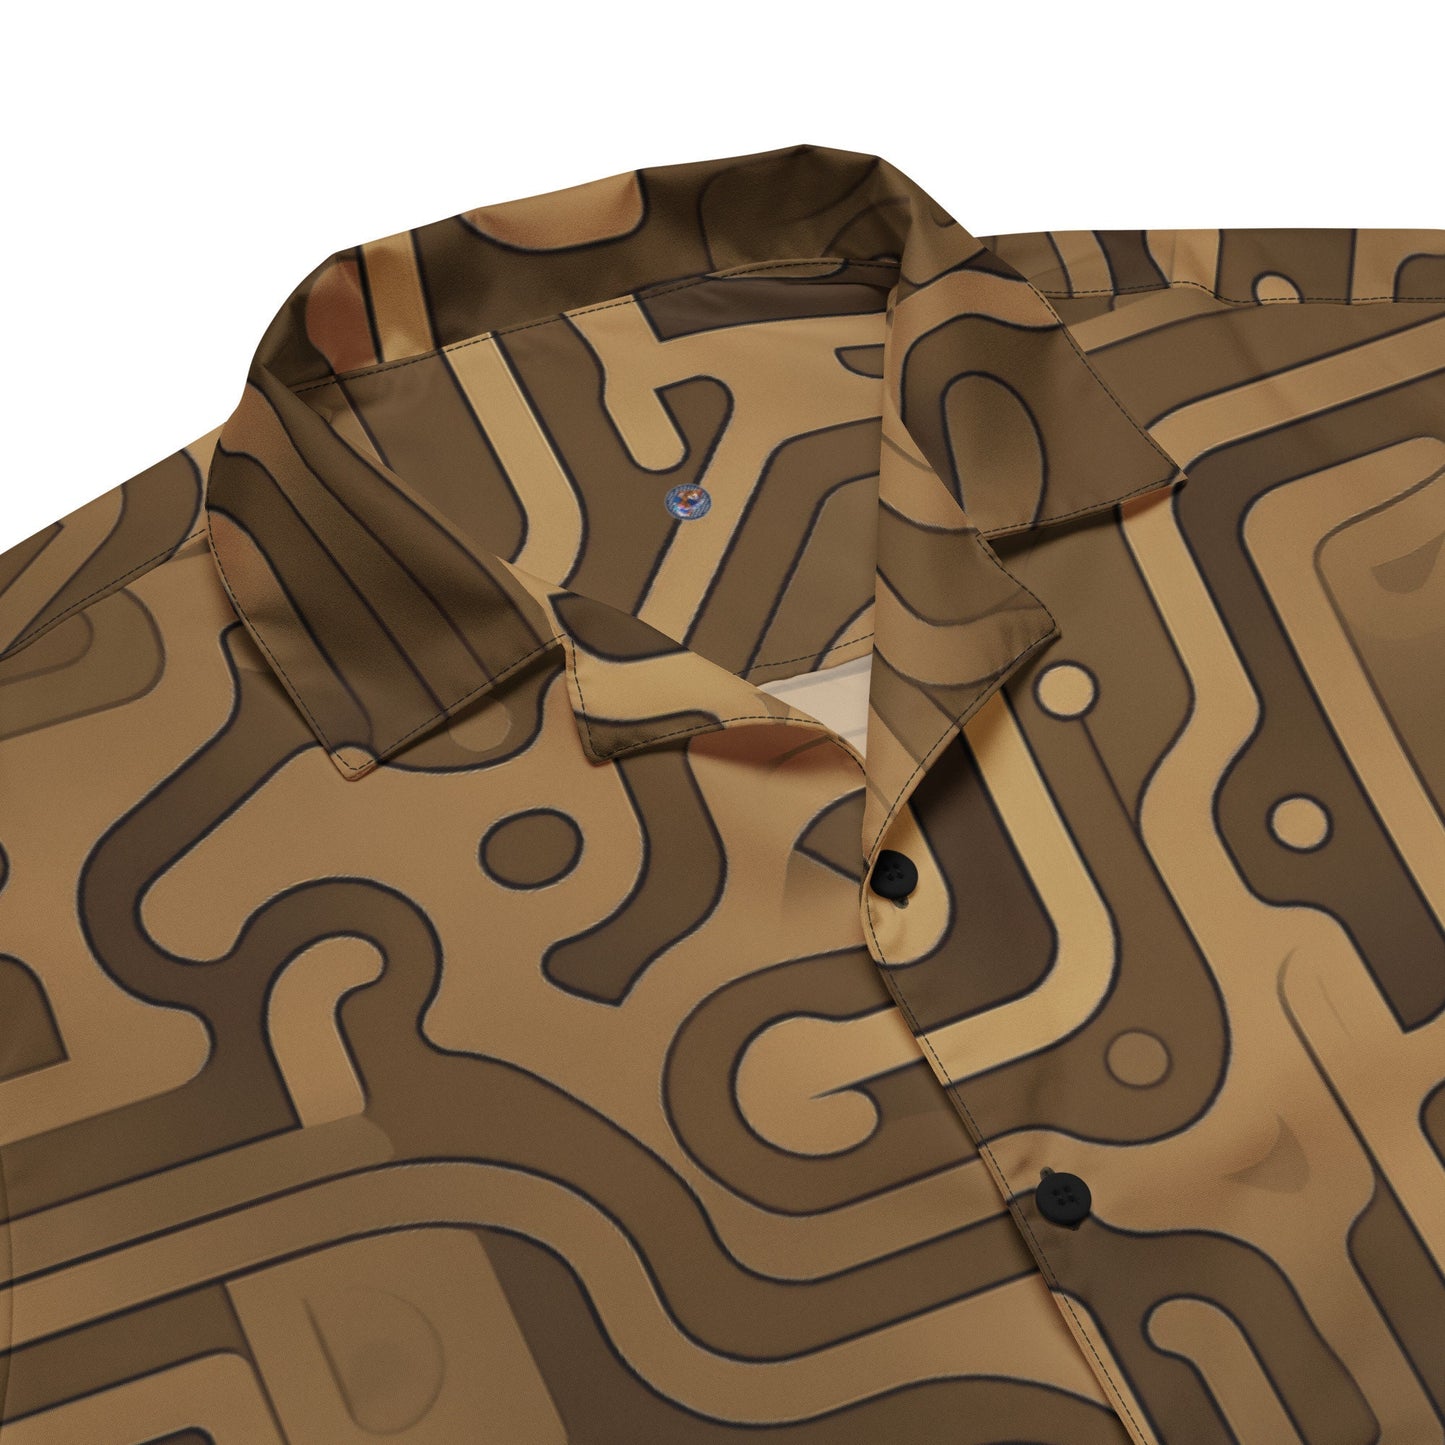 Funky Tiger® Desert Maze Button-Down Shirt - Valles Marineris